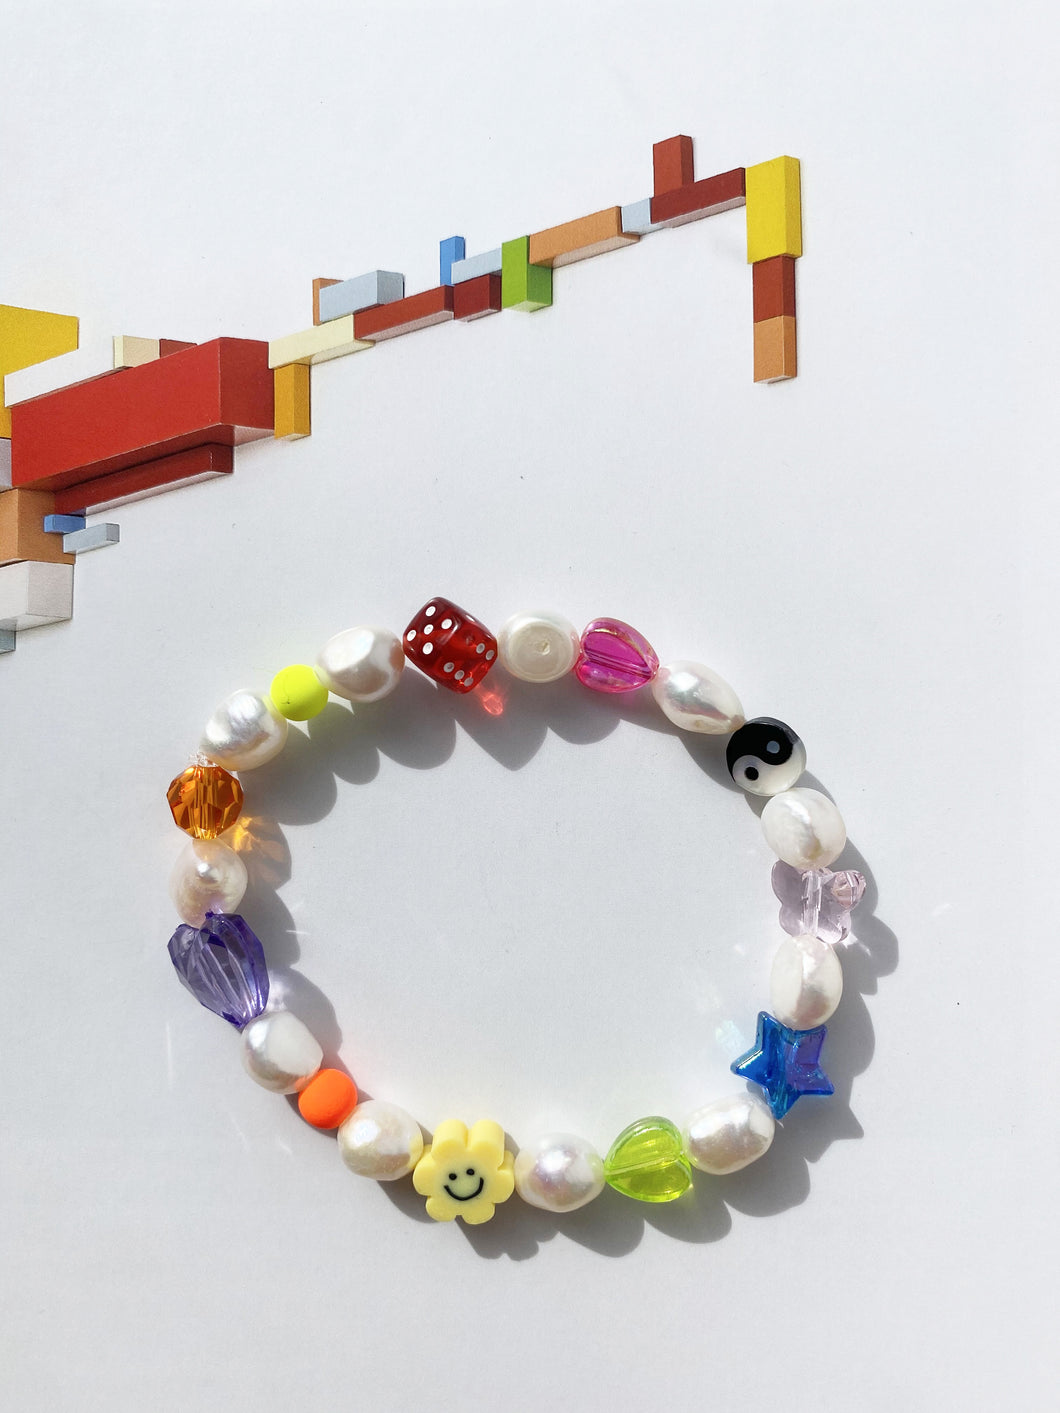 The NNENNA Pearl rainbow bracelet - Blackcurrant Pop